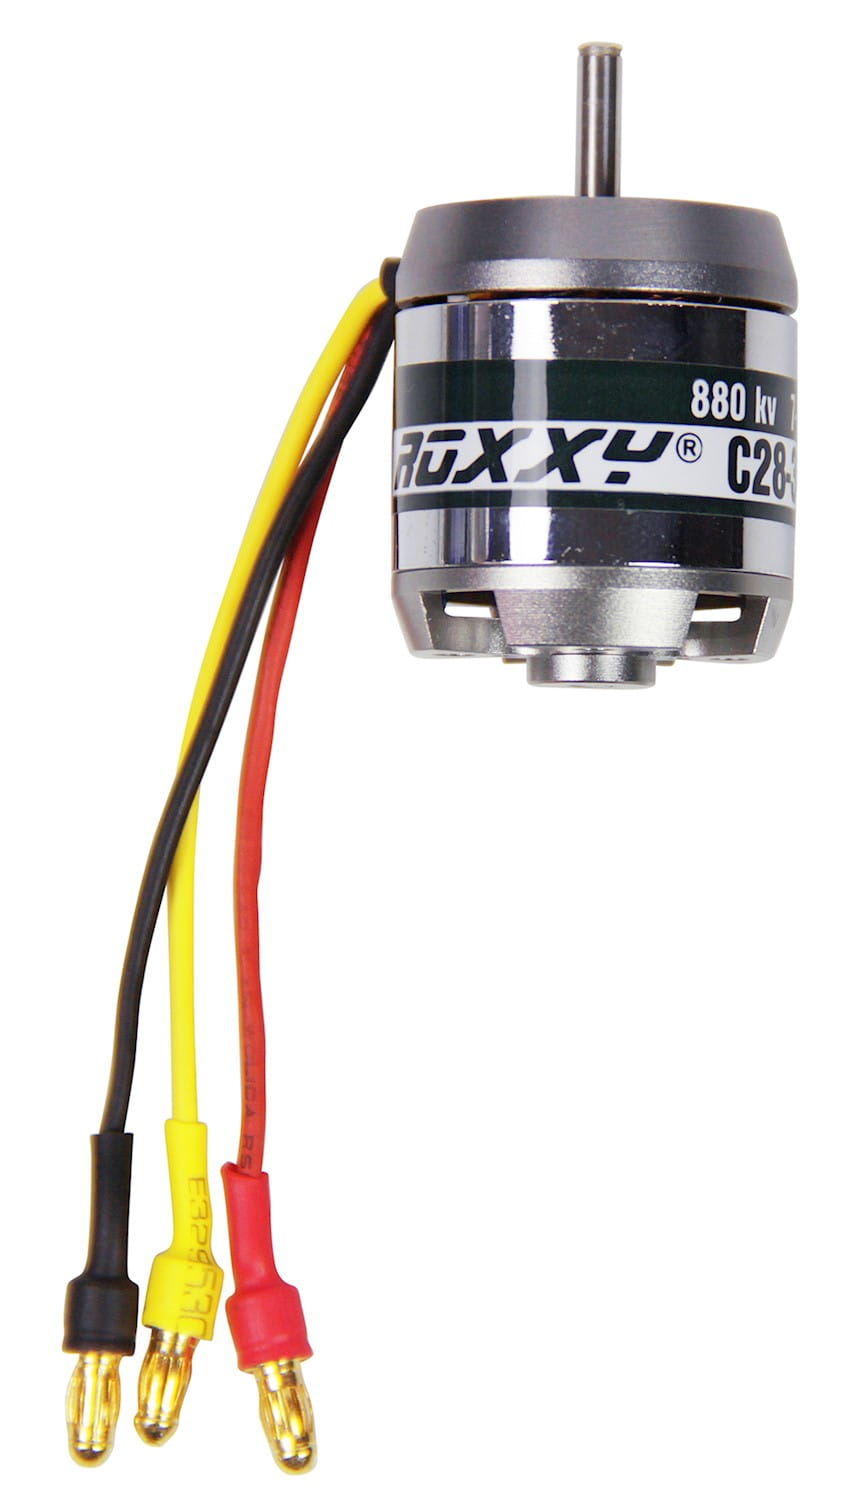 Multiplex ROXXY Brushless Motor BL Outrunner C28-34-880kV